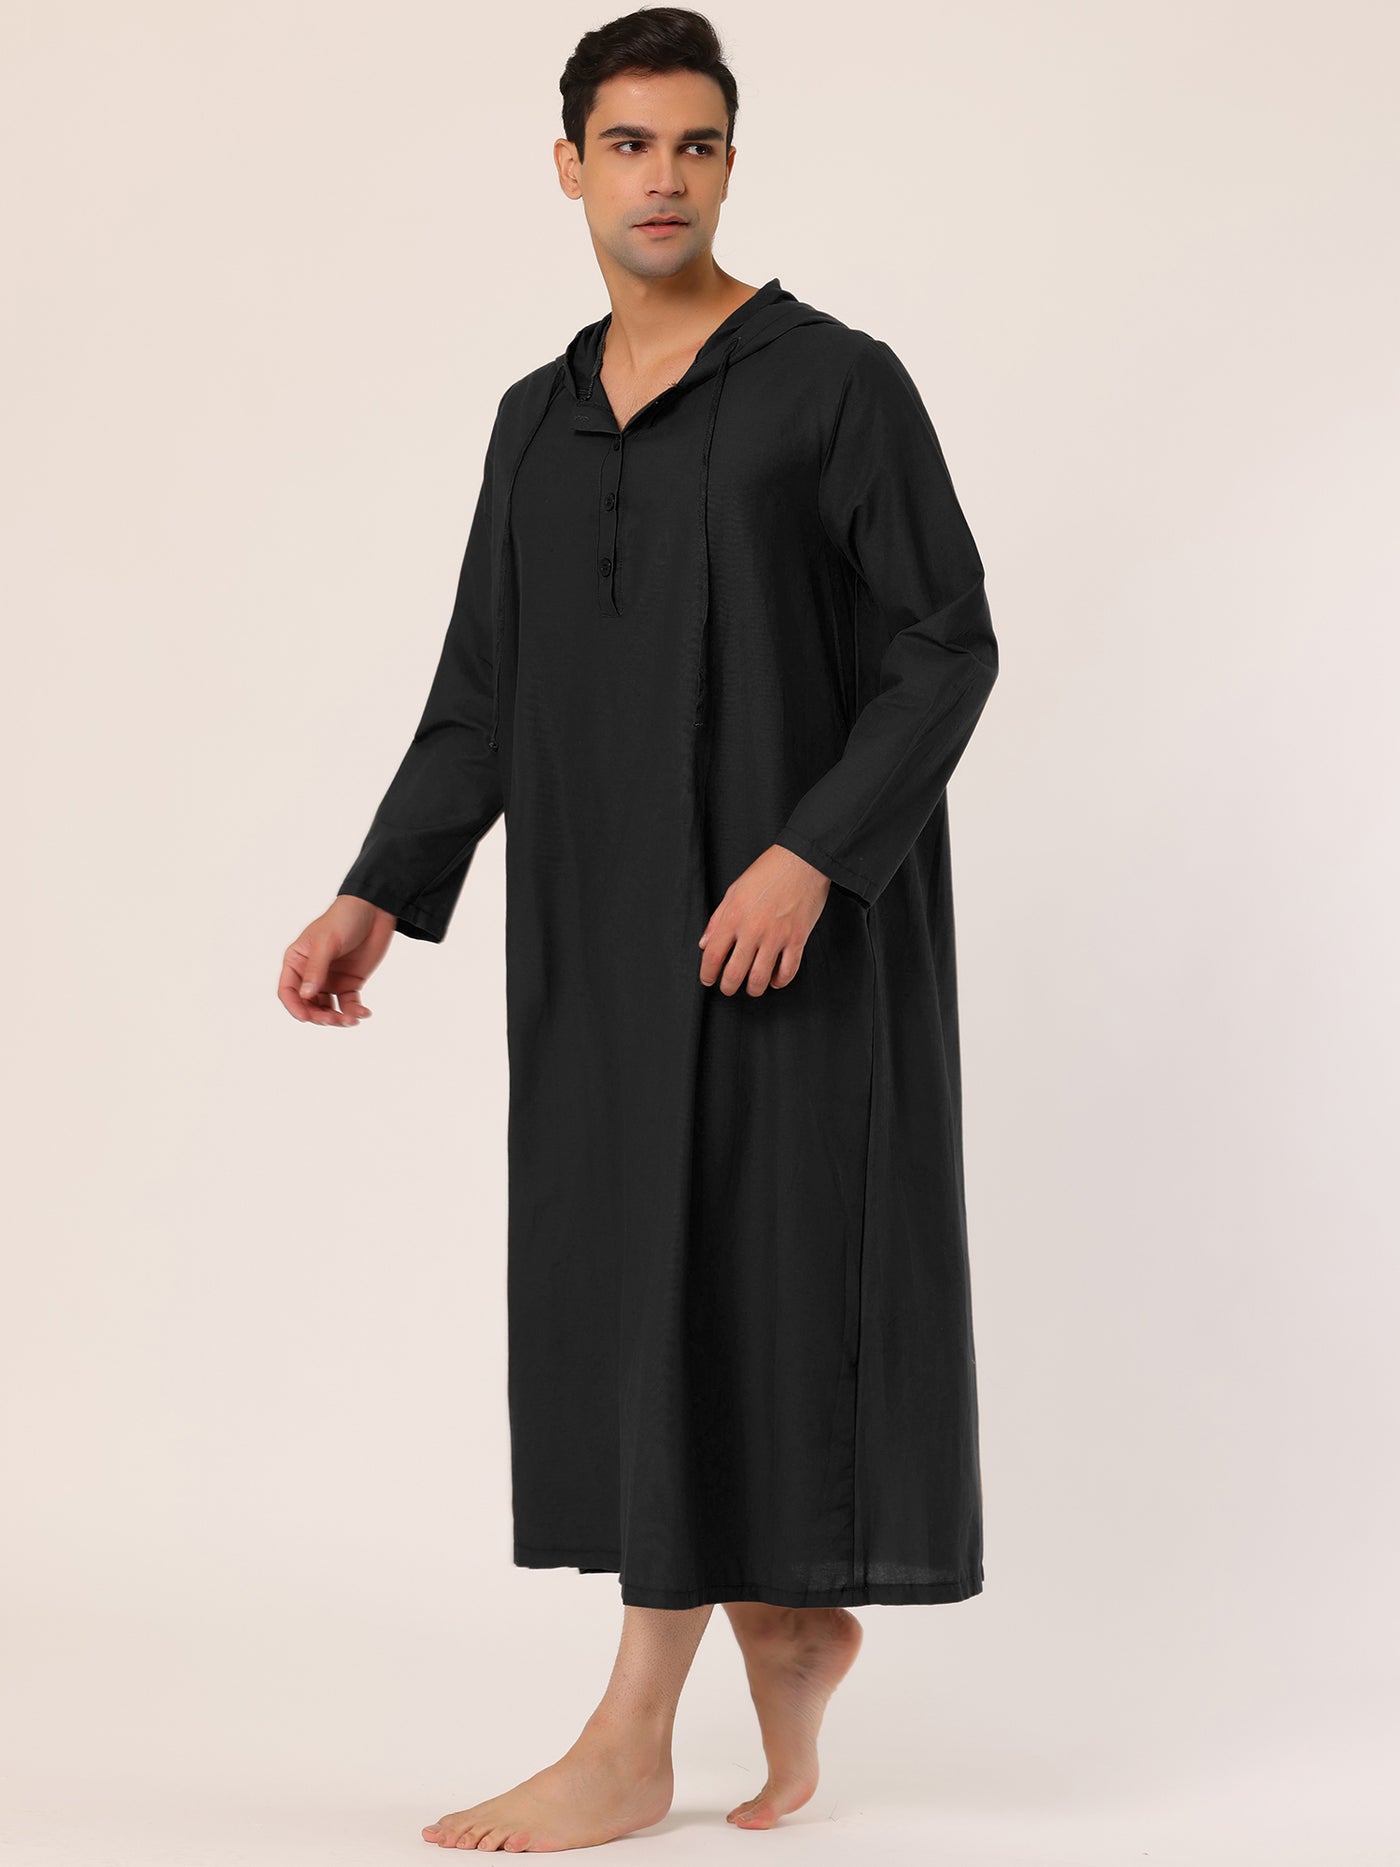 Bublédon Solid Long Sleeve Hooded Loungewear Nightdress